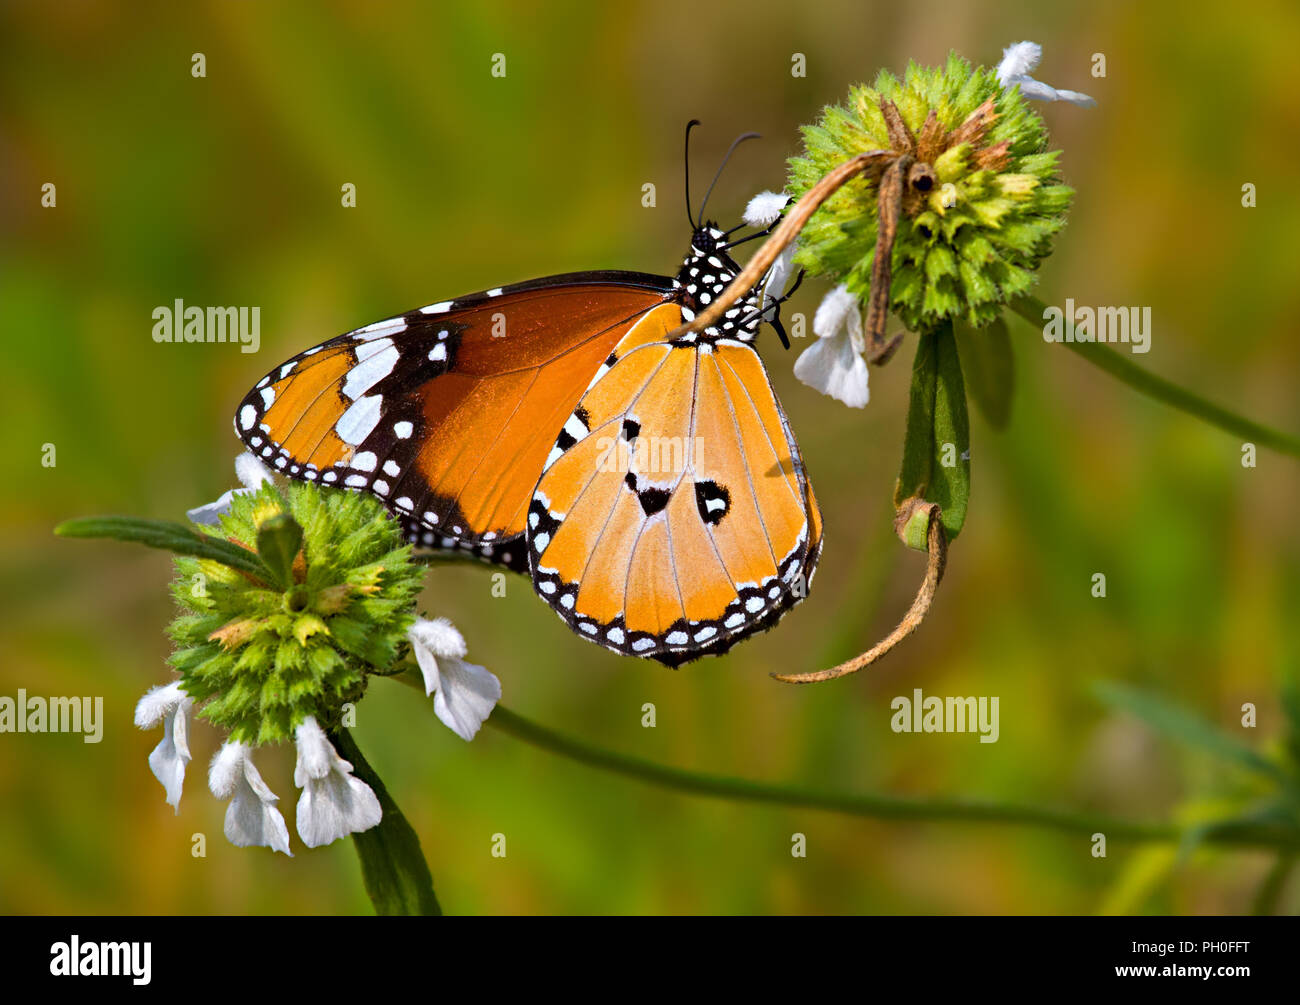 Orange Schmetterling Plain Tiger oder Danaus chrysippus trinken Nektar unter weißen Blumen in einem Garten. Stockfoto